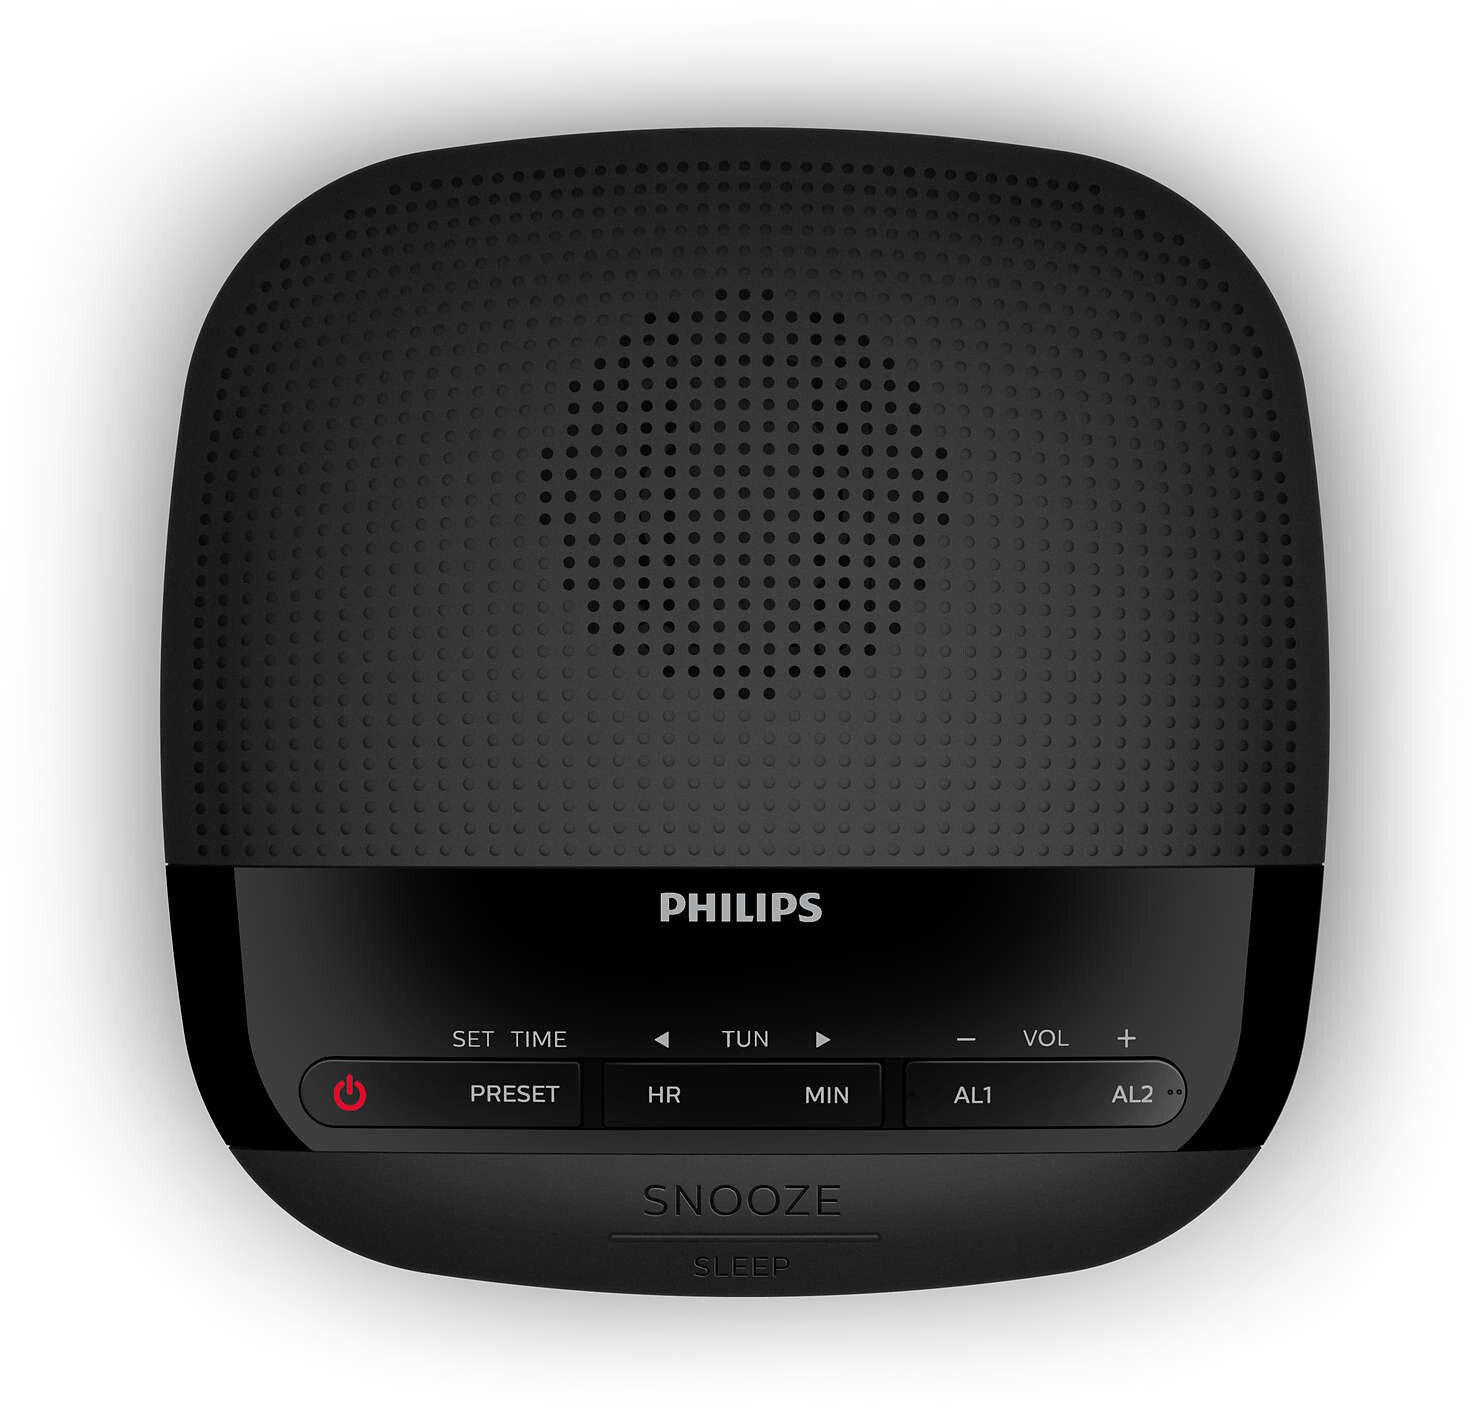 Philips r3505/12 radio-réveil, radio dab+ (double alarme, arrêt